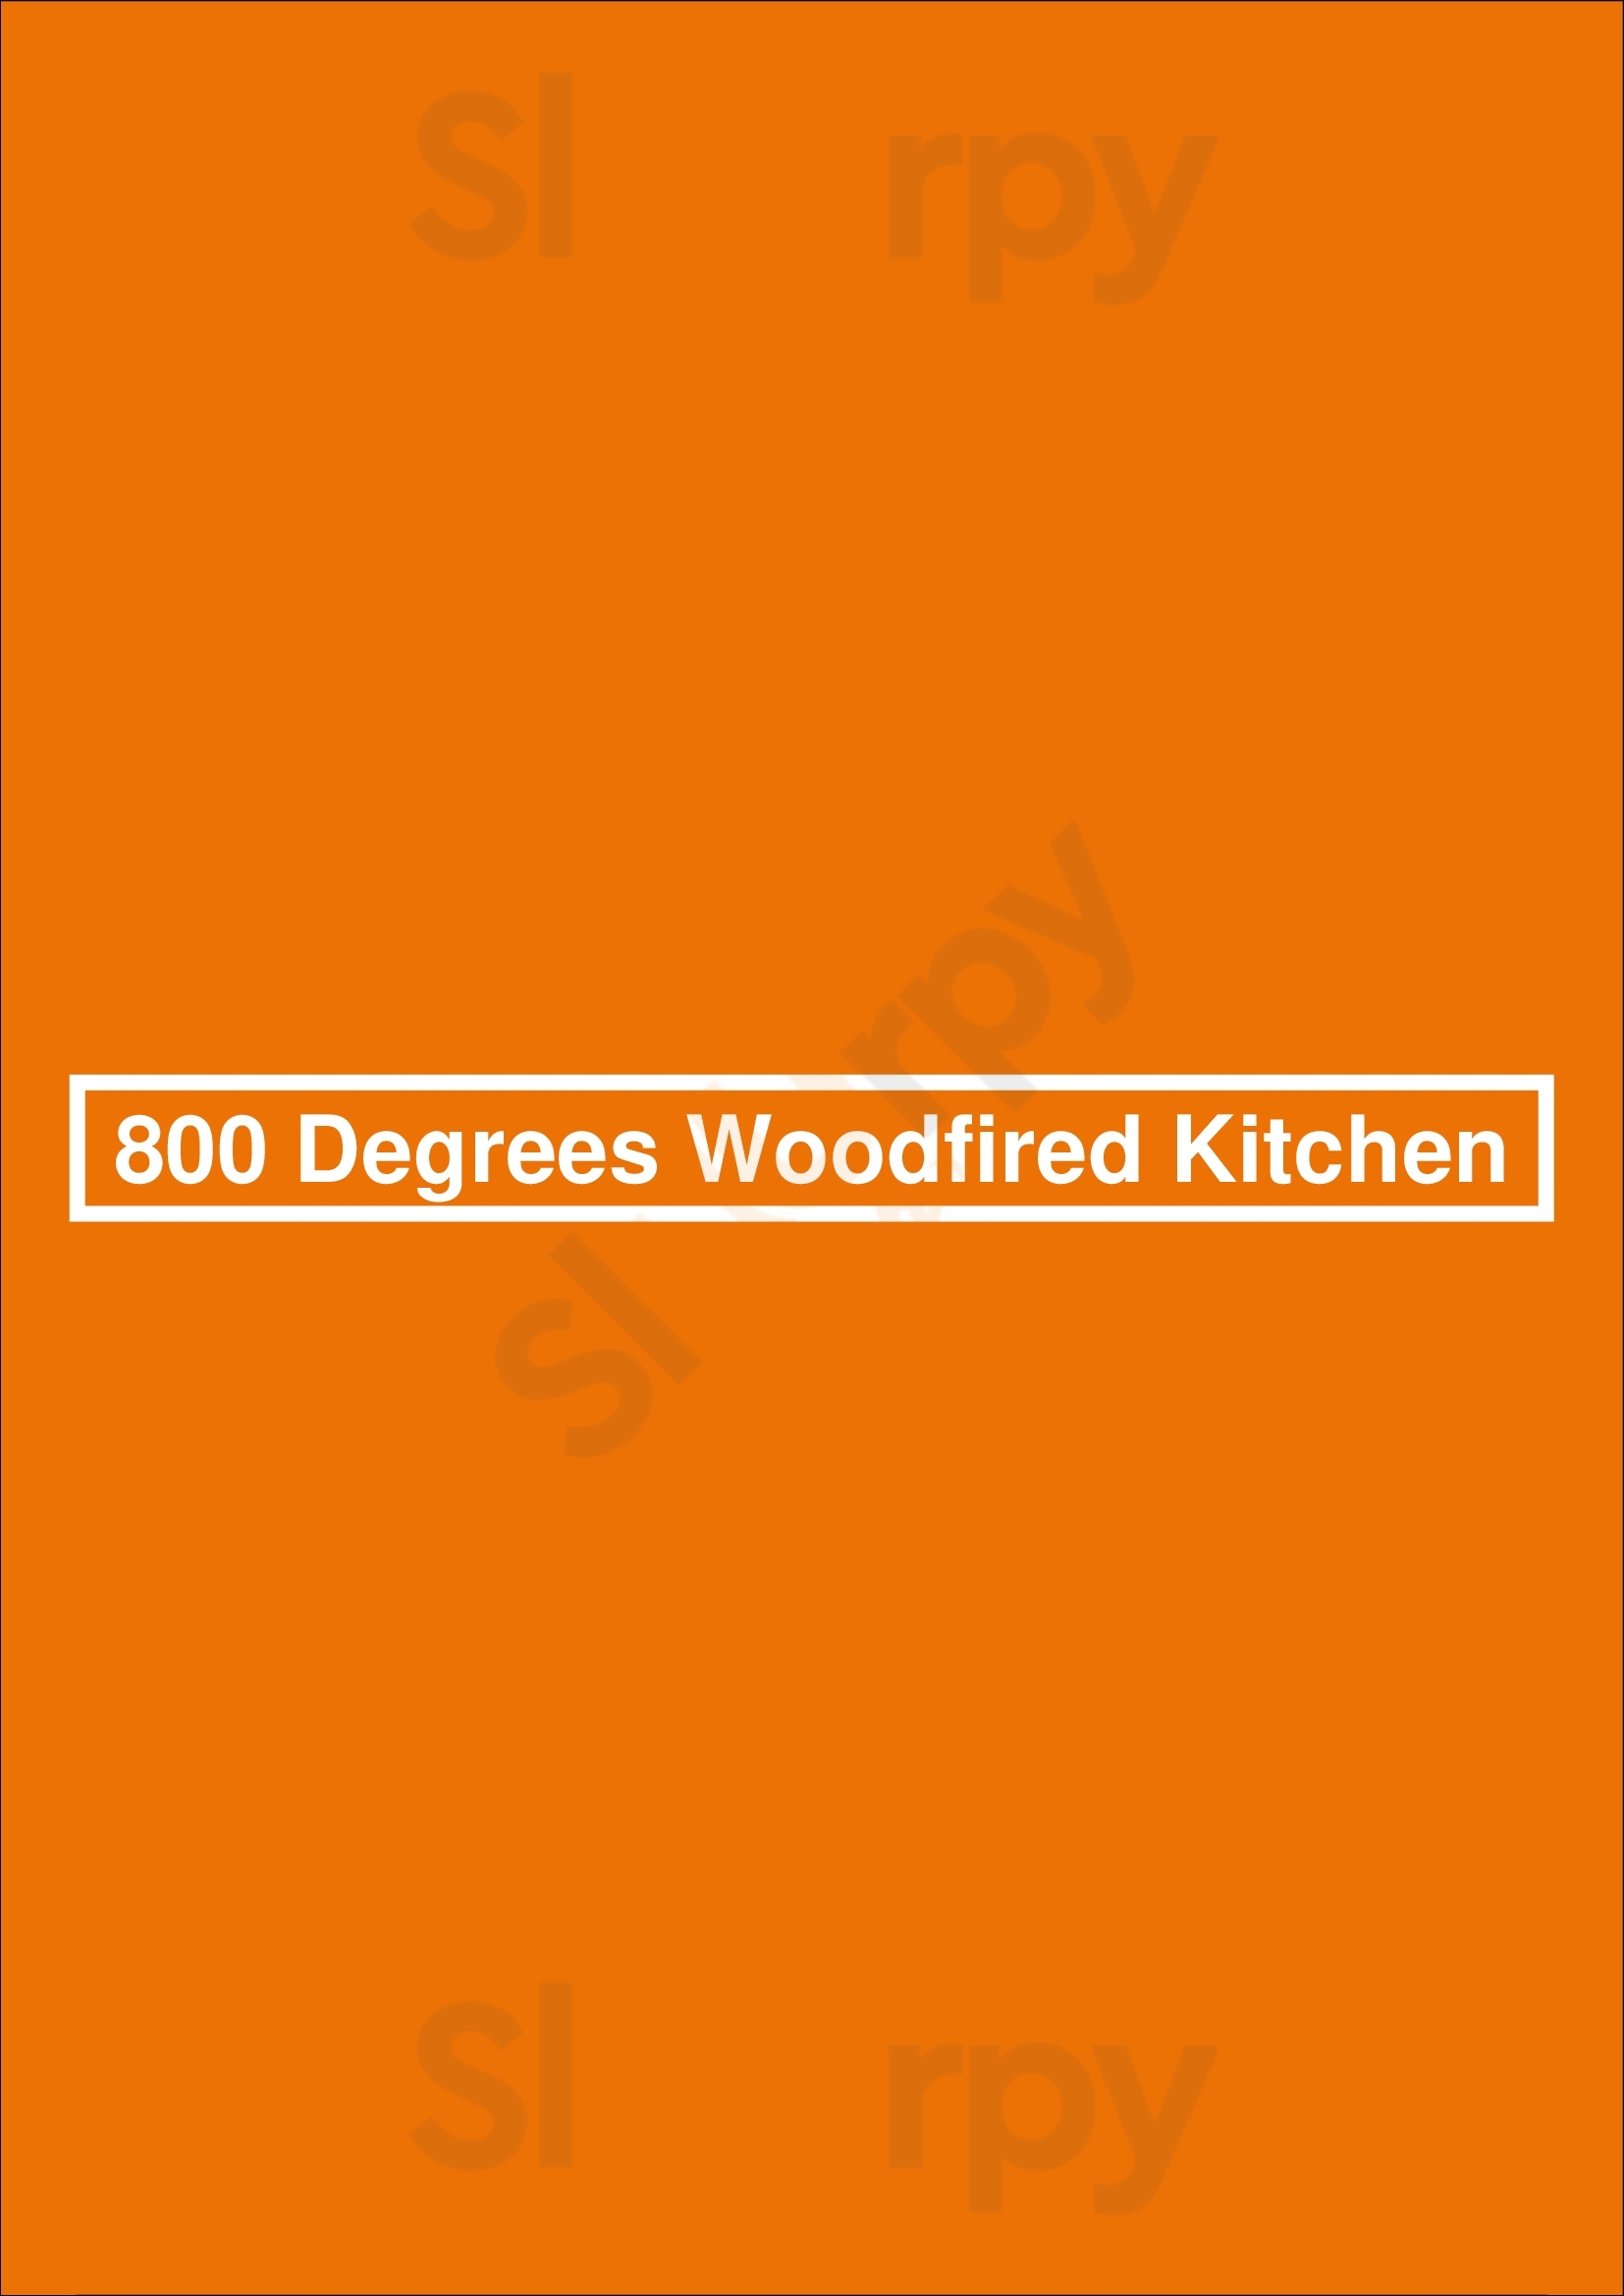 800 Degrees Woodfired Kitchen Santa Monica Menu - 1